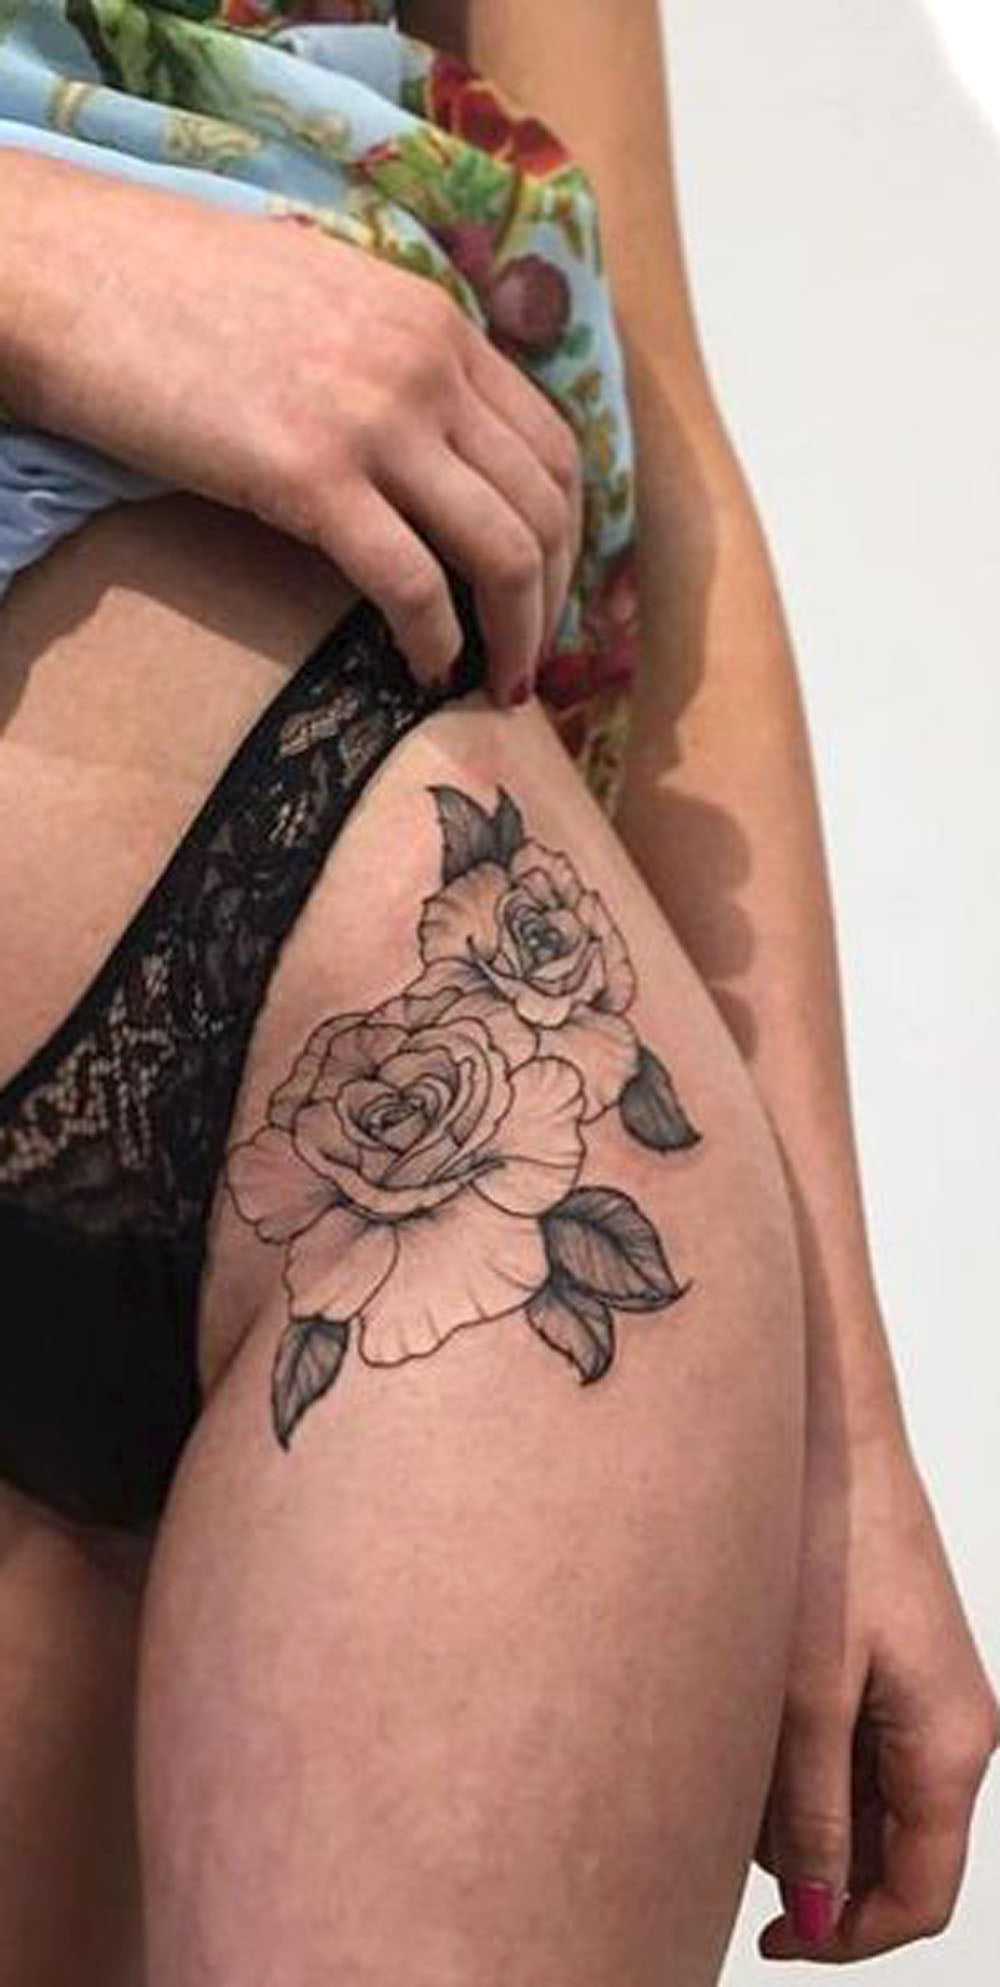 Minimal Rose Outline Thigh Hip Tattoo Ideas for Women -  ideas de tatuaje de rosa mosqueta para las mujeres - www.MyBodiArt.com